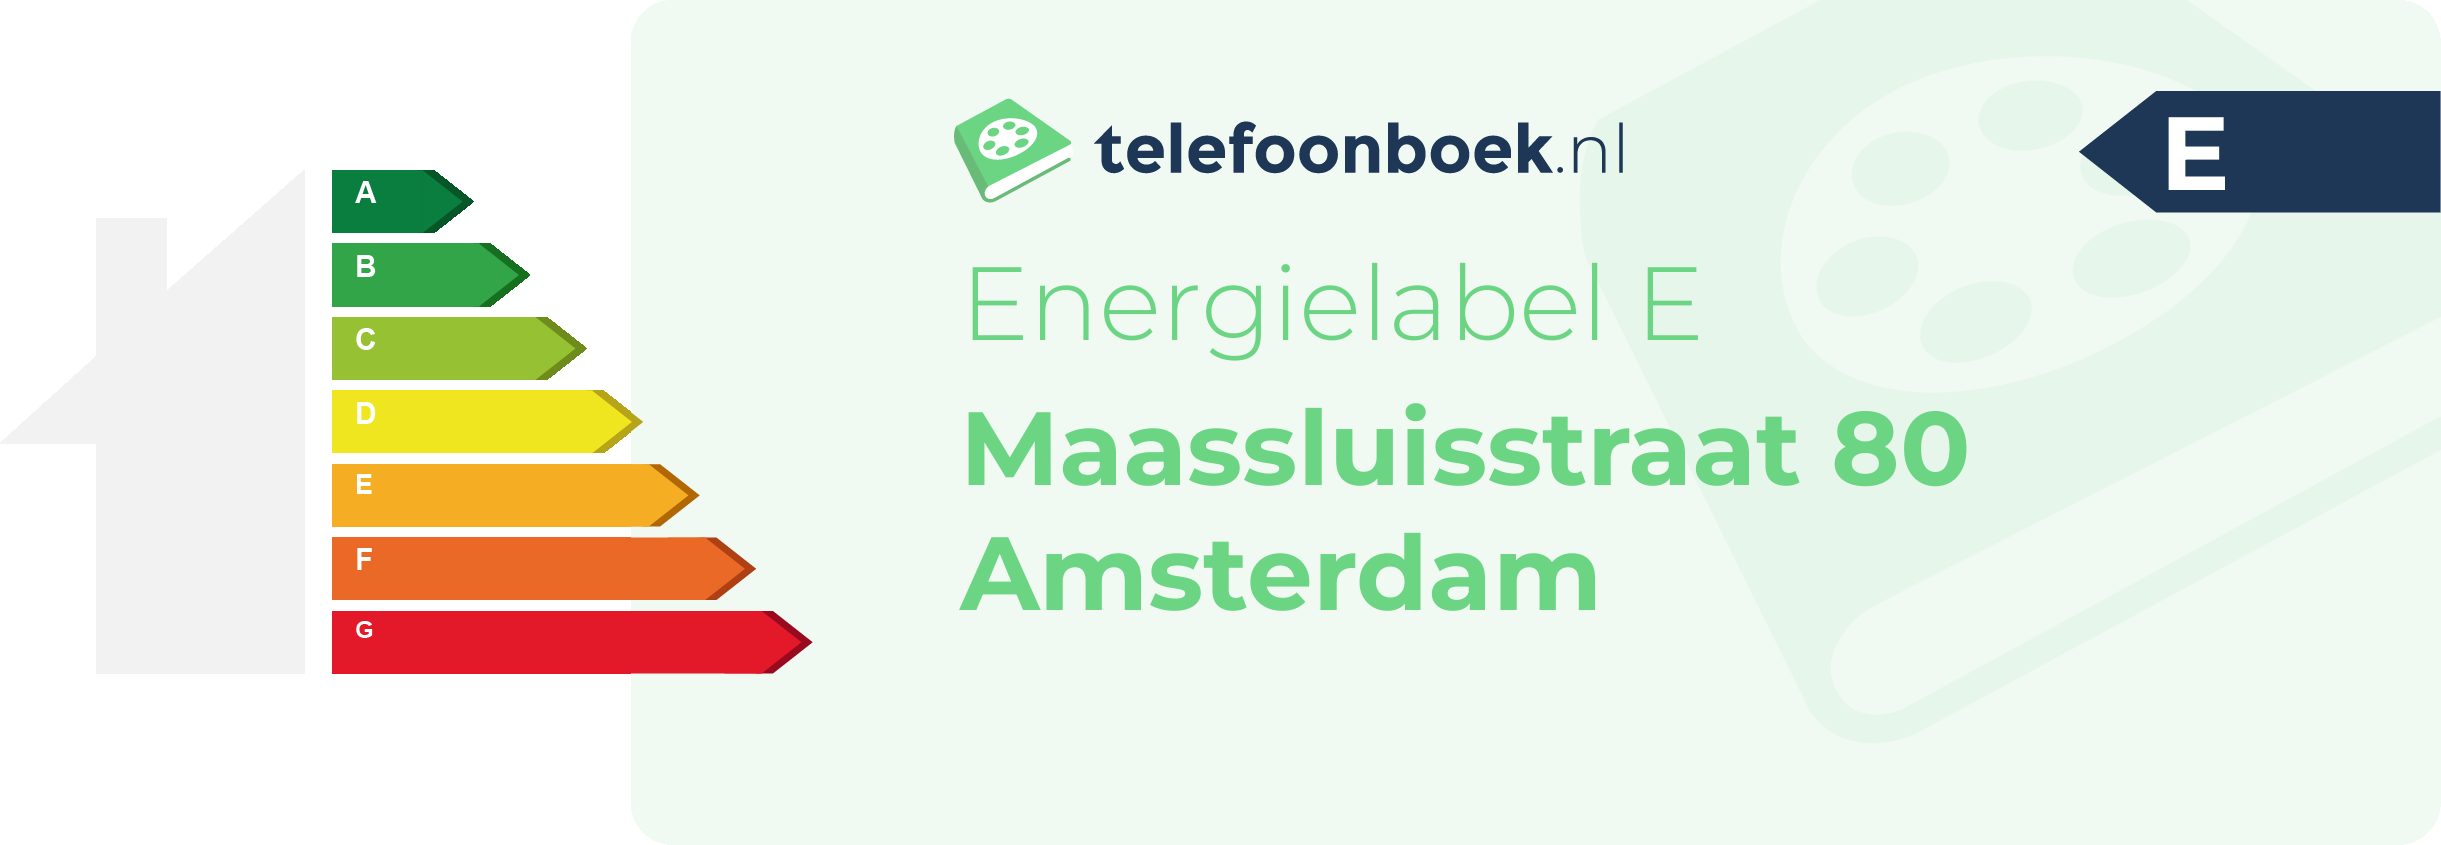 Energielabel Maassluisstraat 80 Amsterdam